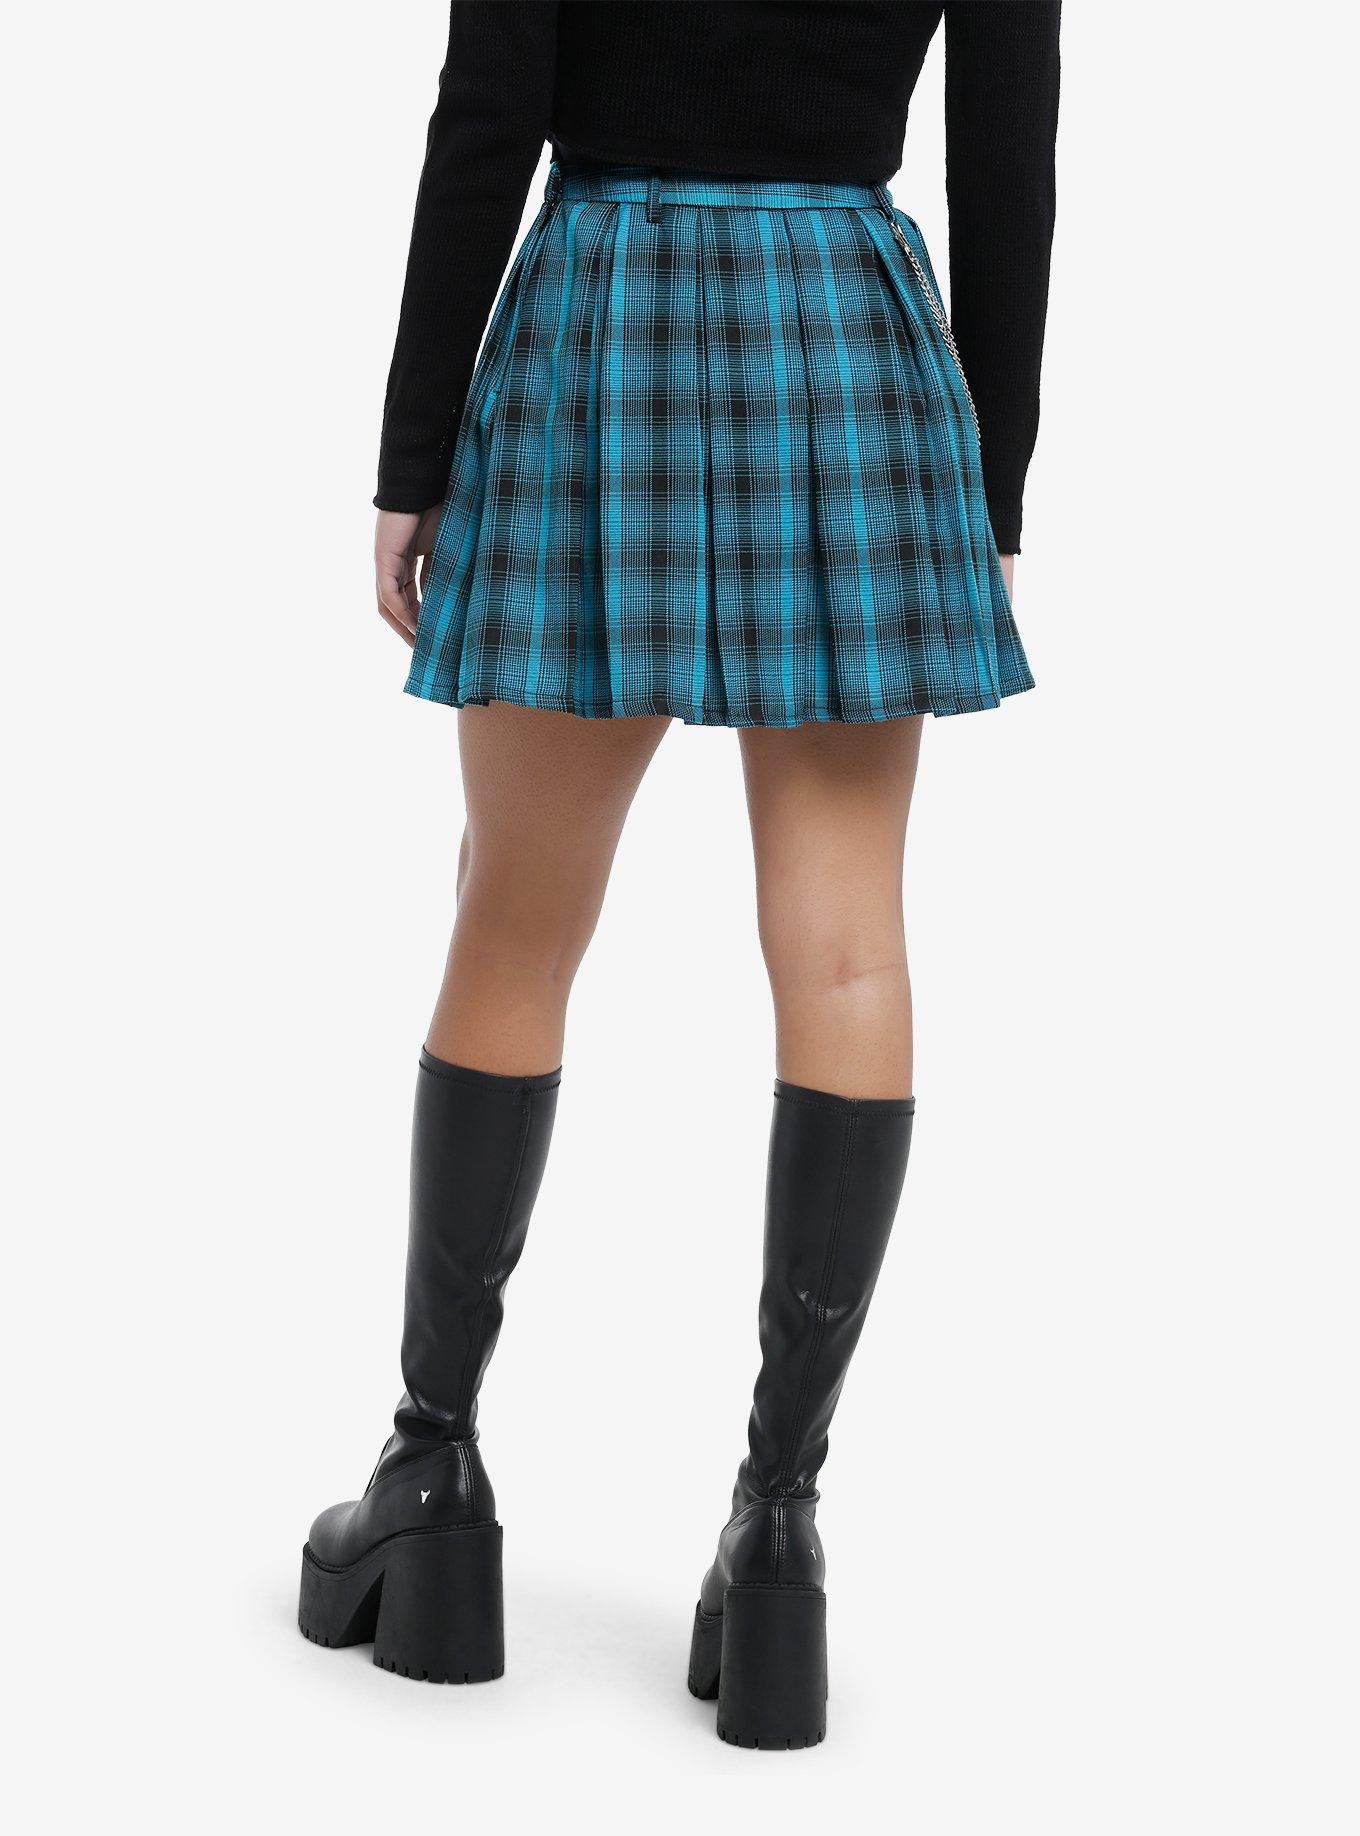 Teal & Black Plaid Pleated Skirt, BLACK, alternate